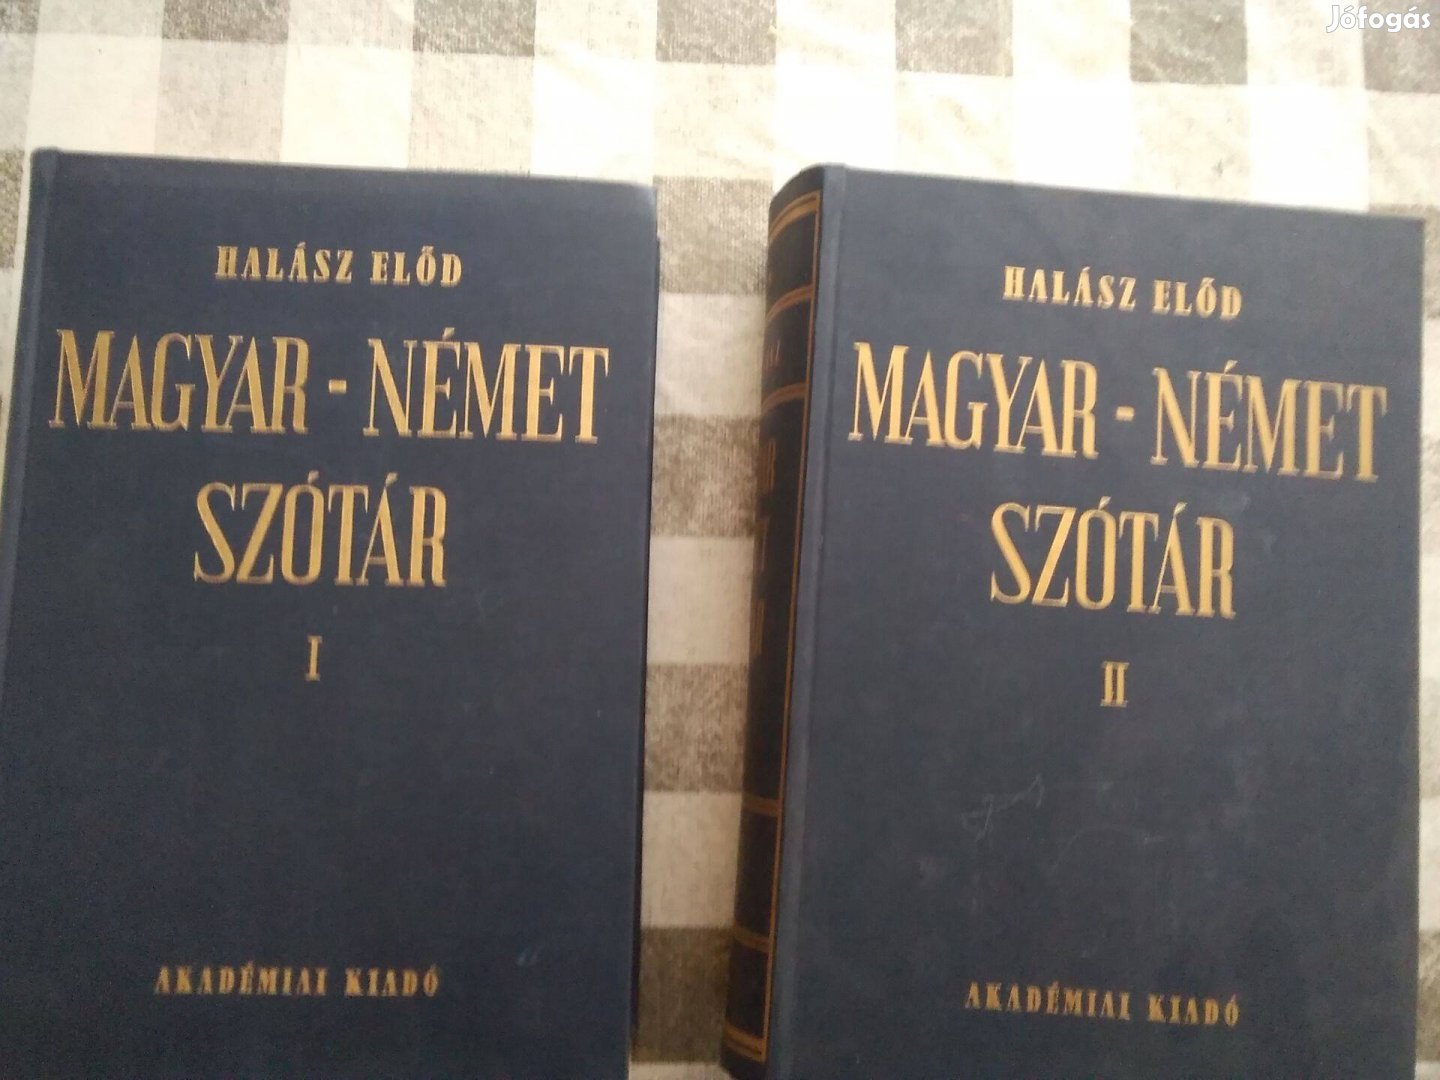 Magyar német nagyszótár szótár két kötetes hibátlan